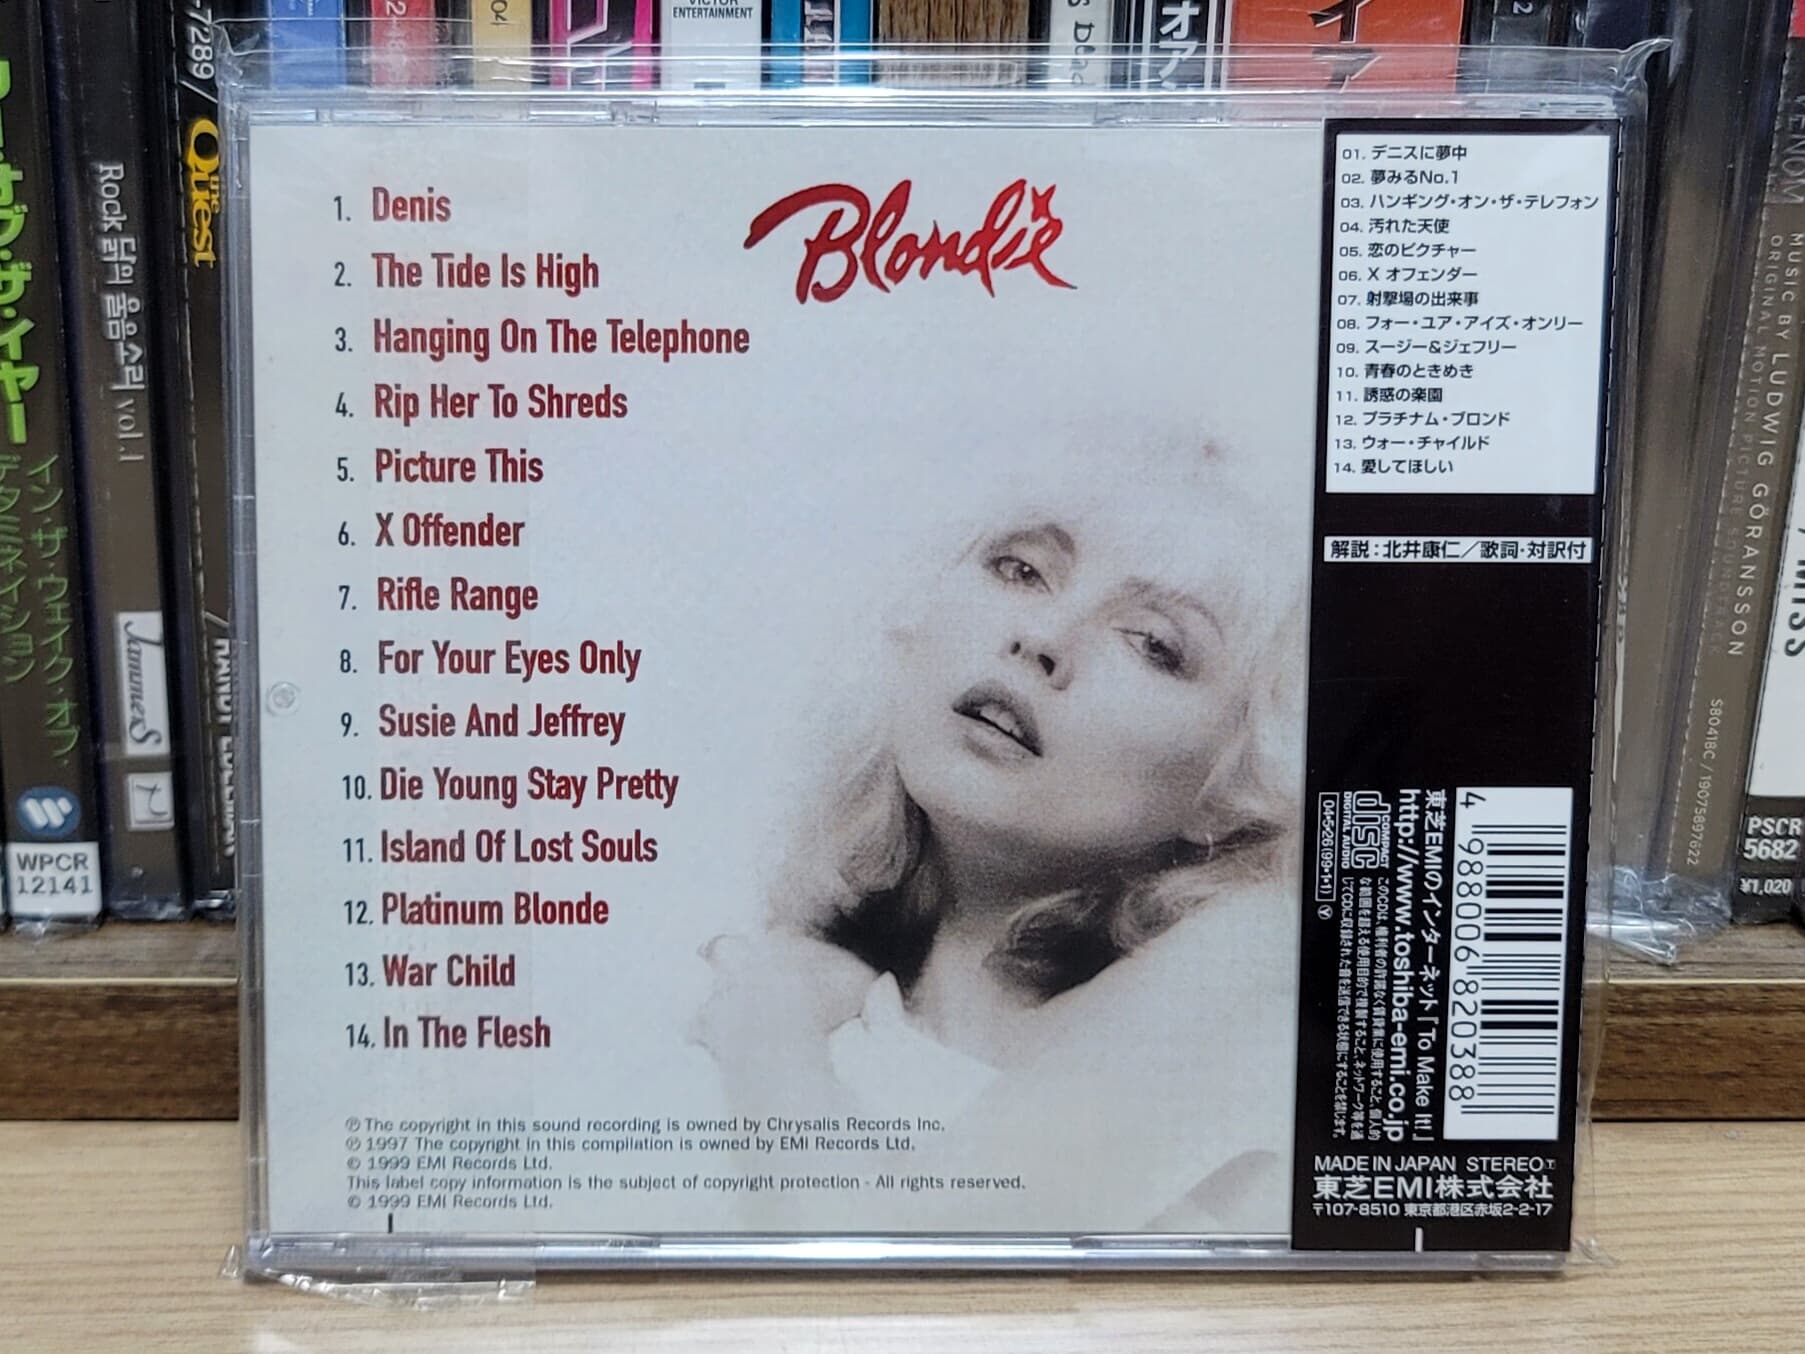 (일본반) Blondie - The Essential Collection